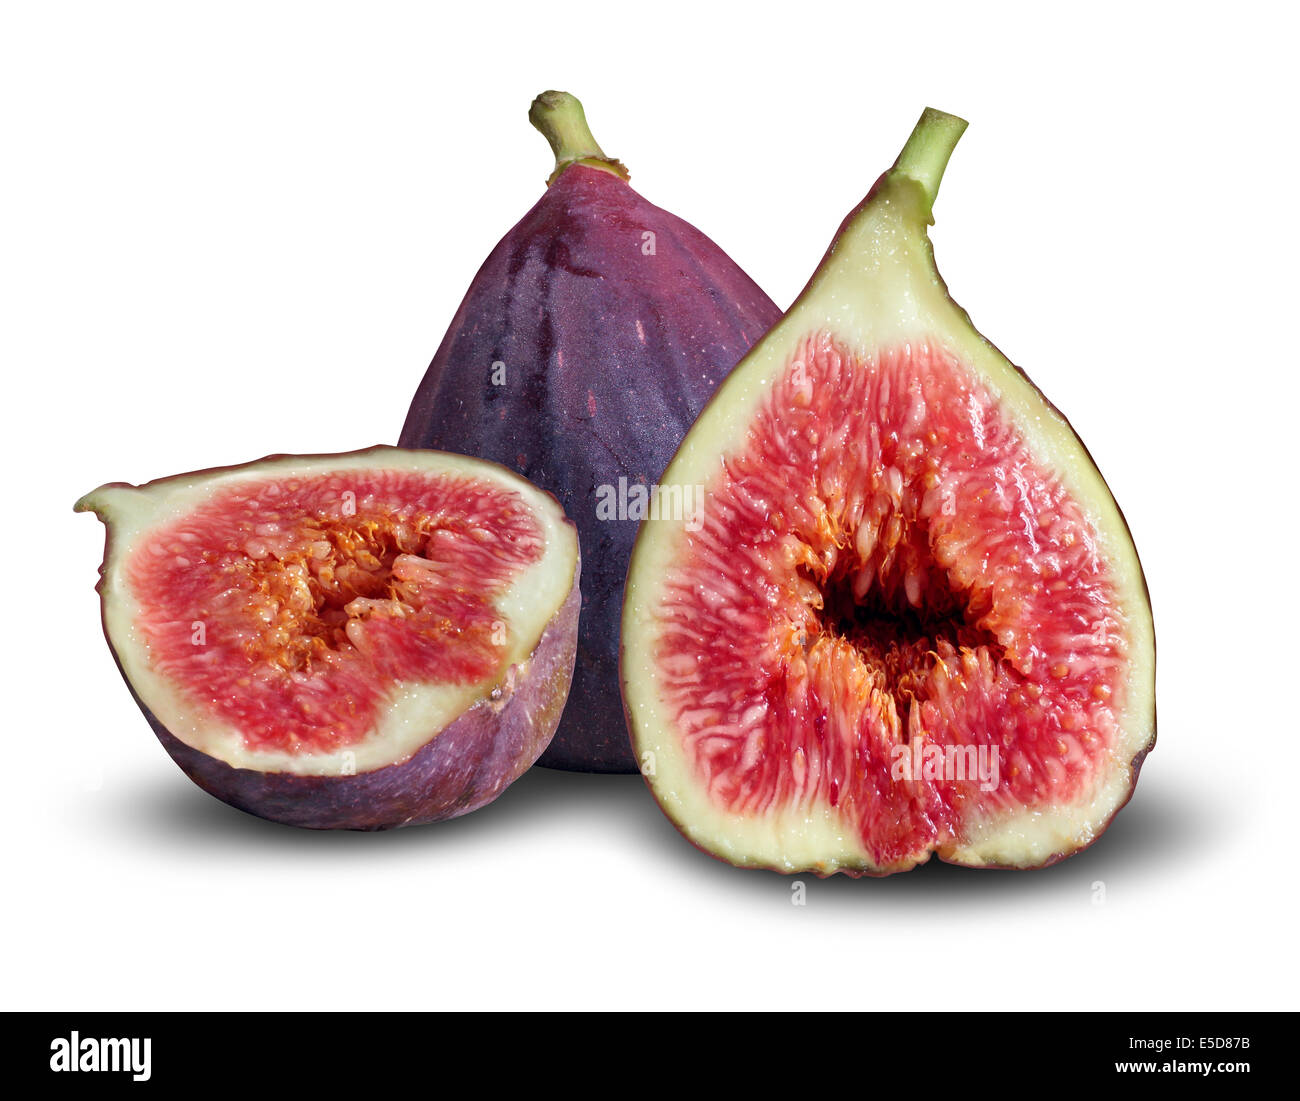 Fig fruto concpt como un grupo de higos frescos en un símbolo de la buena nutrición y alimentación sana. Foto de stock